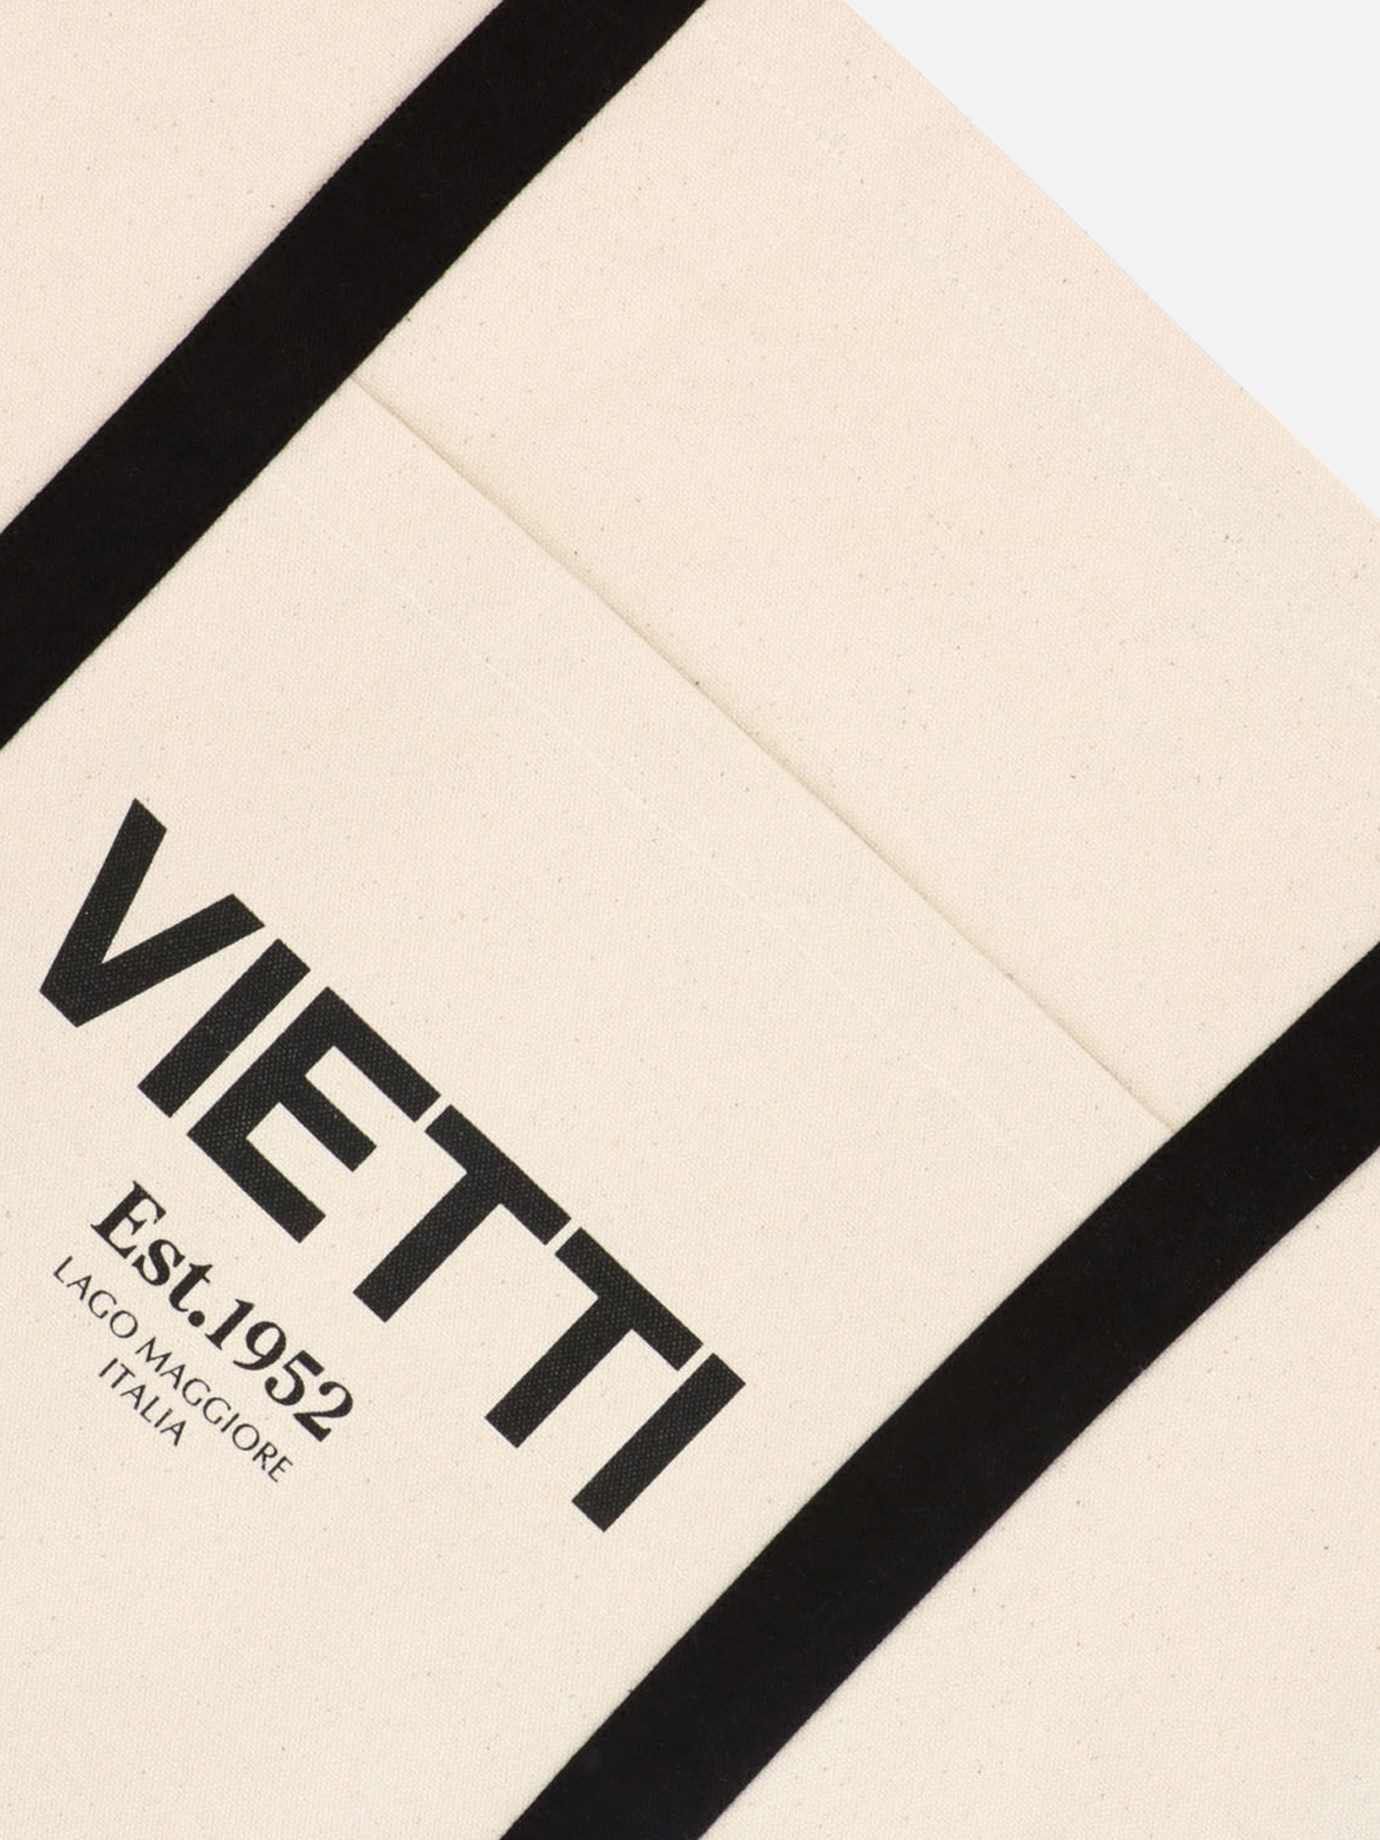  Vietti  shopperby VIETTI Merchandise - 3